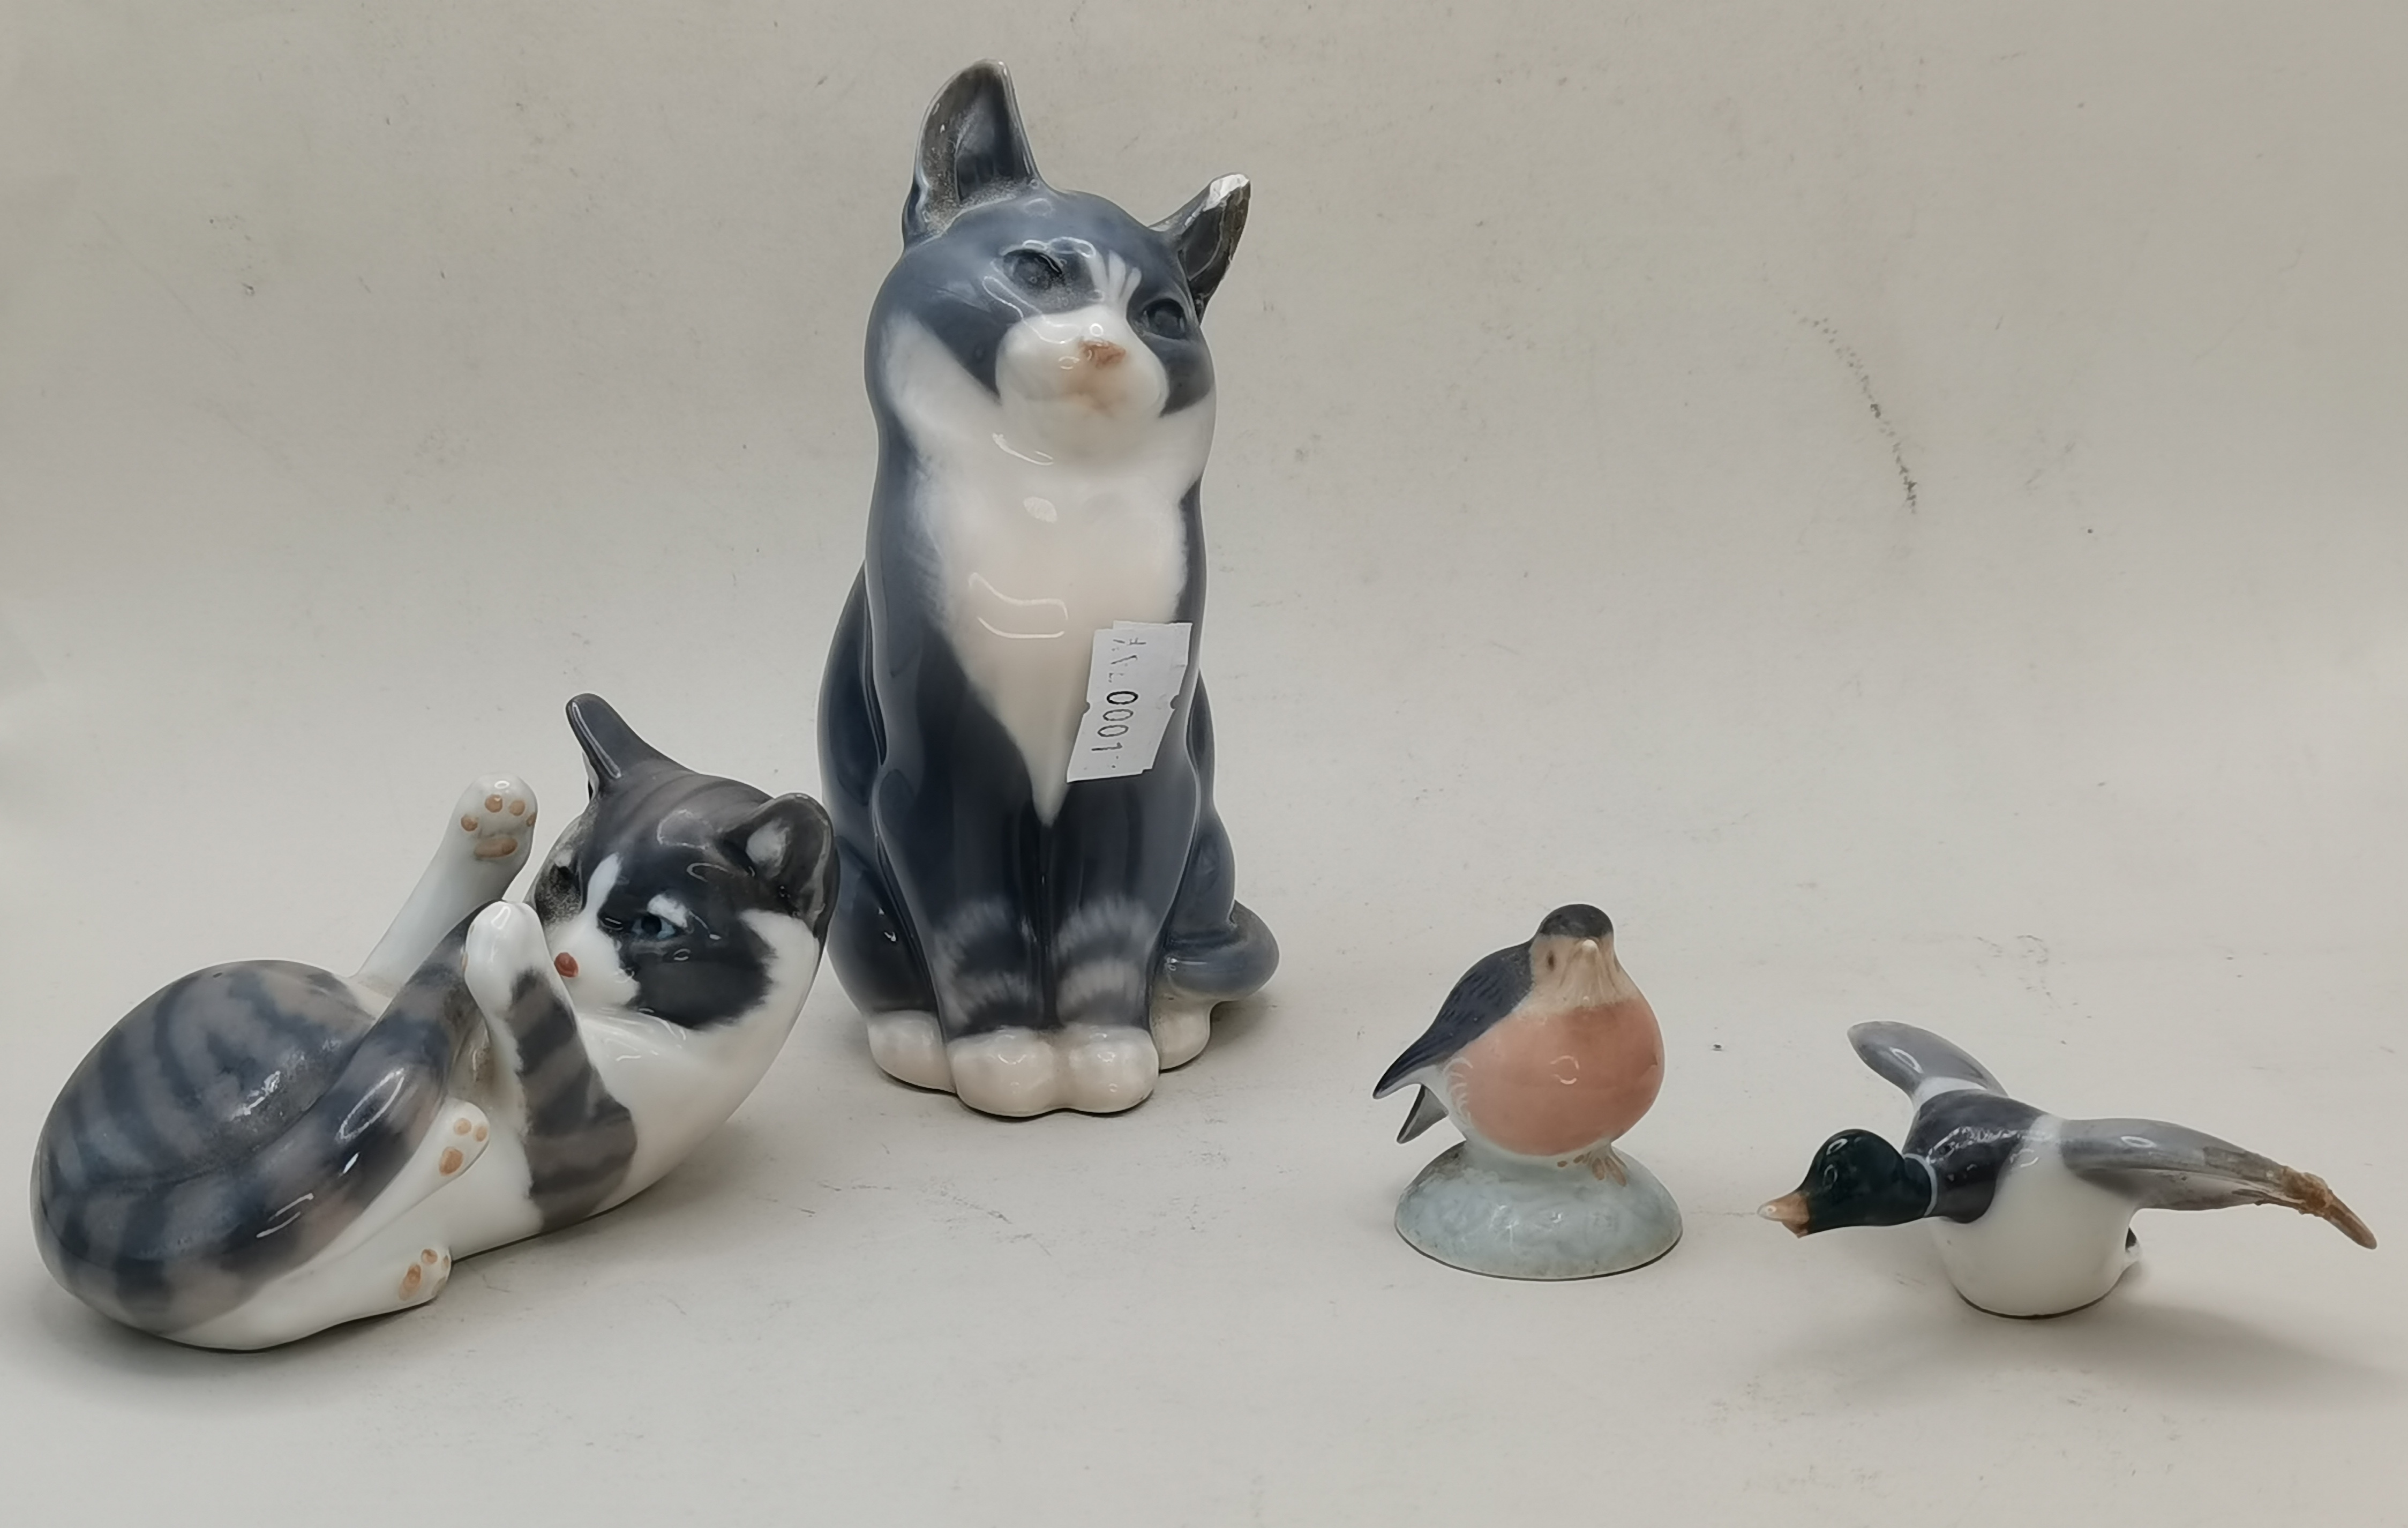 4 x Royal Copenhagen figures - 2 x cats, duck and bird (A/F)